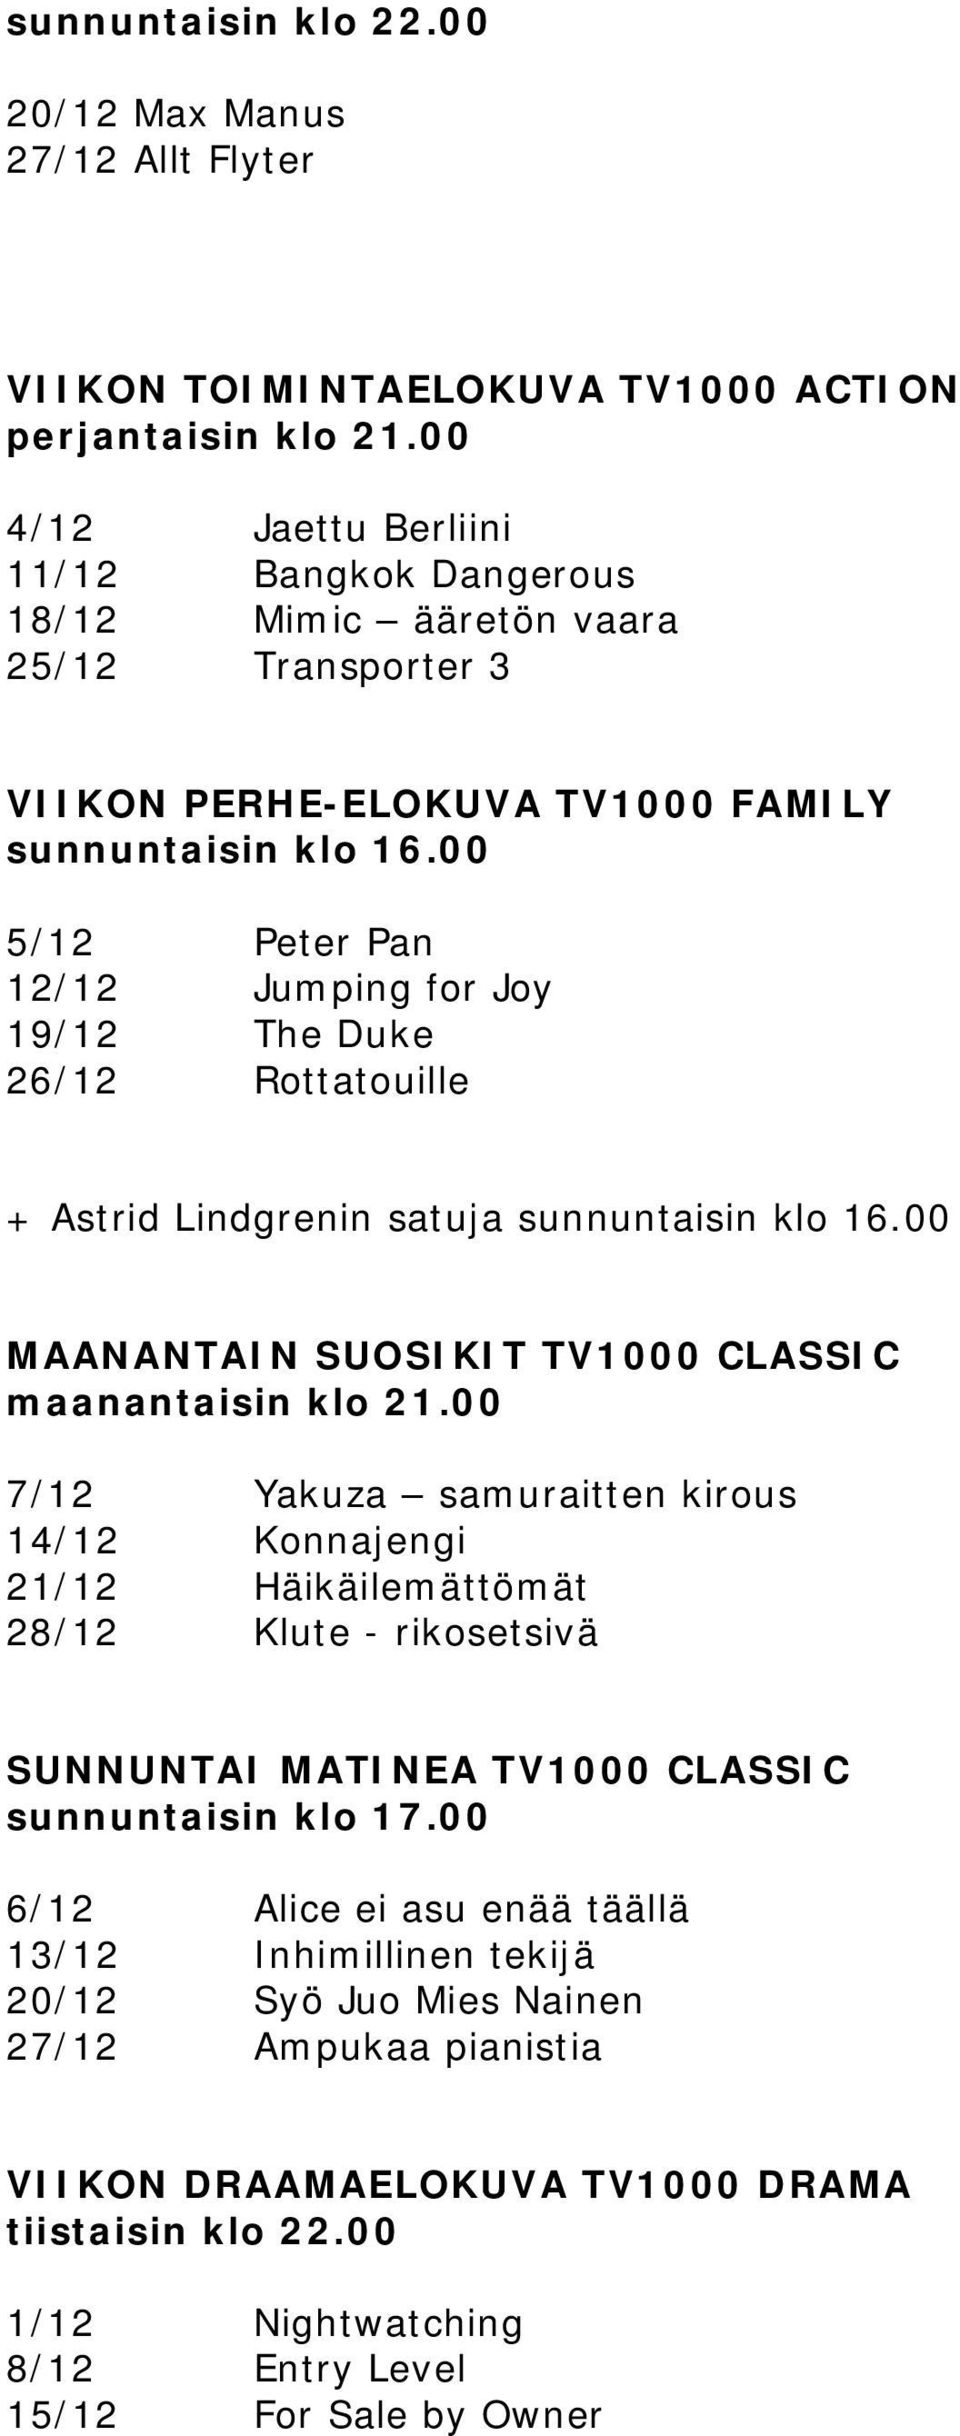 00 5/12 Peter Pan 12/12 Jumping for Joy 19/12 The Duke 26/12 Rottatouille + Astrid Lindgrenin satuja sunnuntaisin klo 16.00 MAANANTAIN SUOSIKIT TV1000 CLASSIC maanantaisin klo 21.